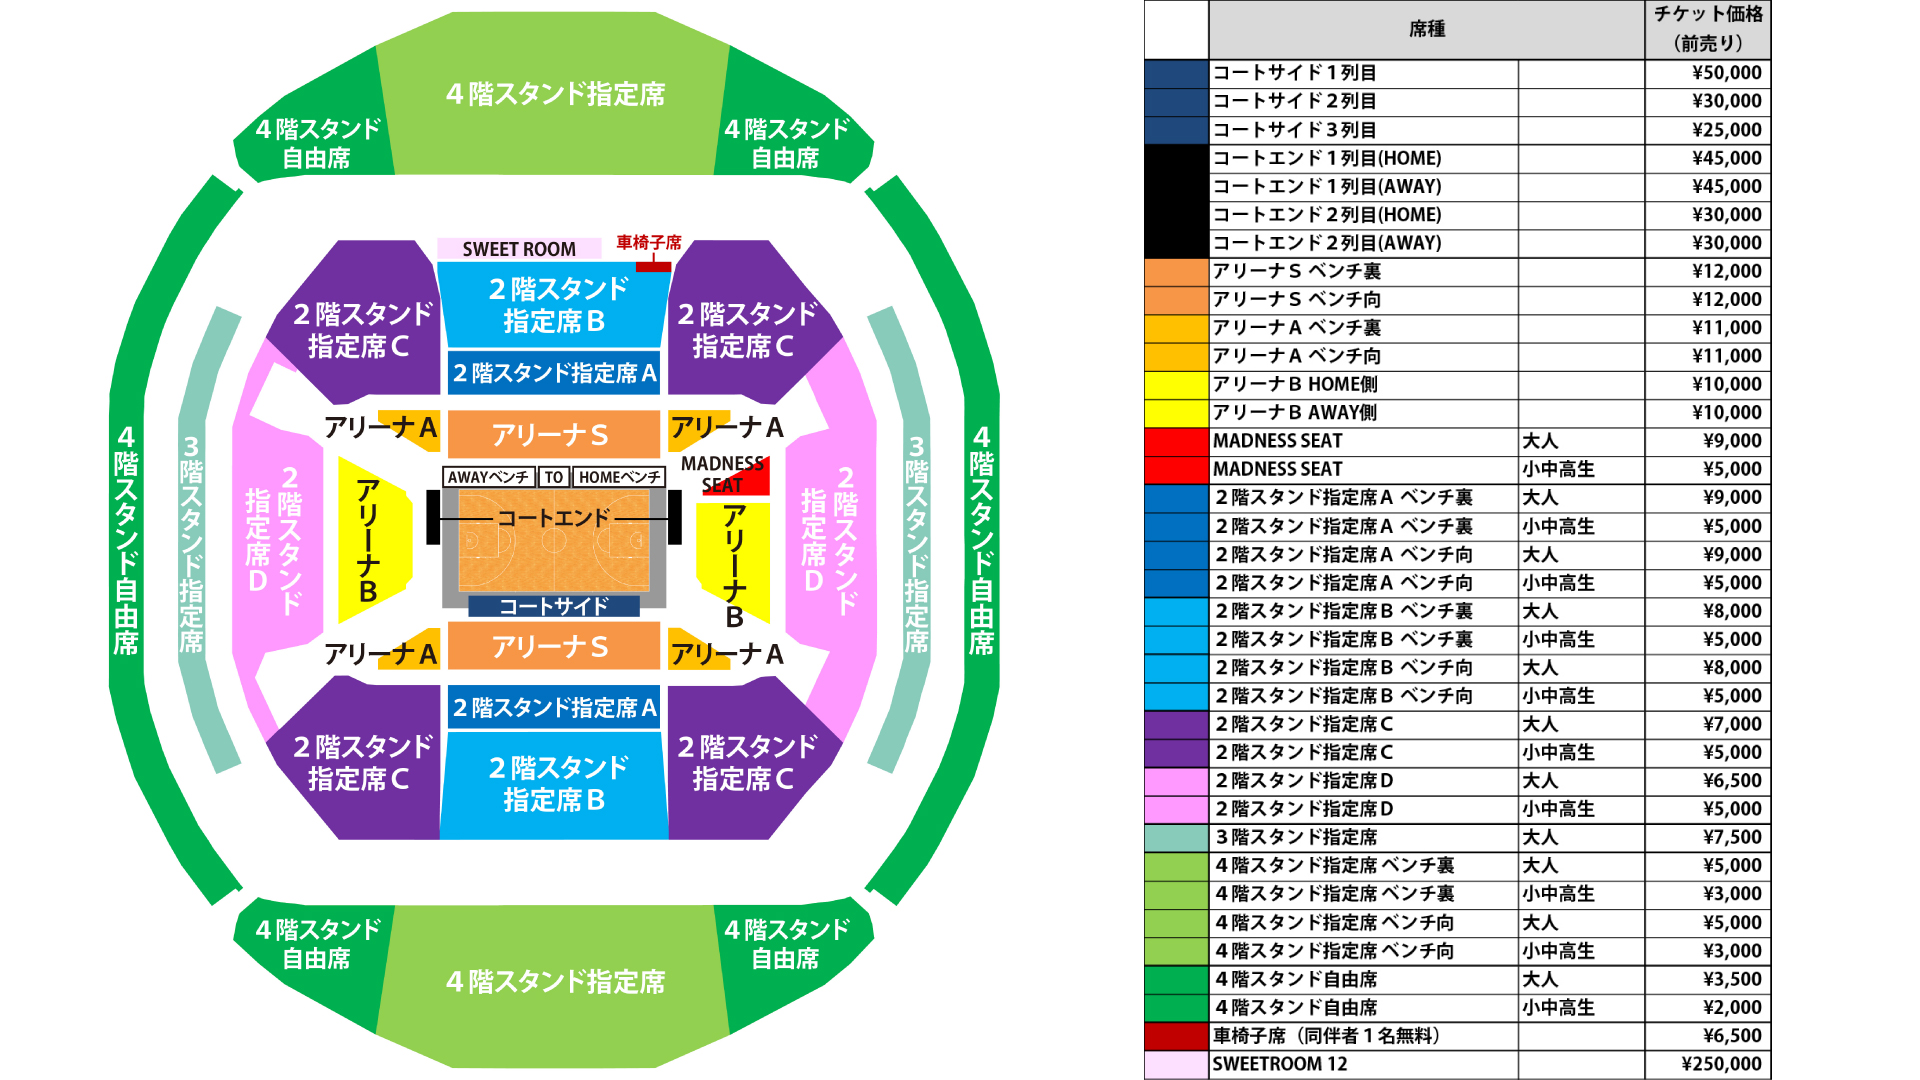 チケット情報 バスケットボール日本代表国際試合 International Basketball Games 19